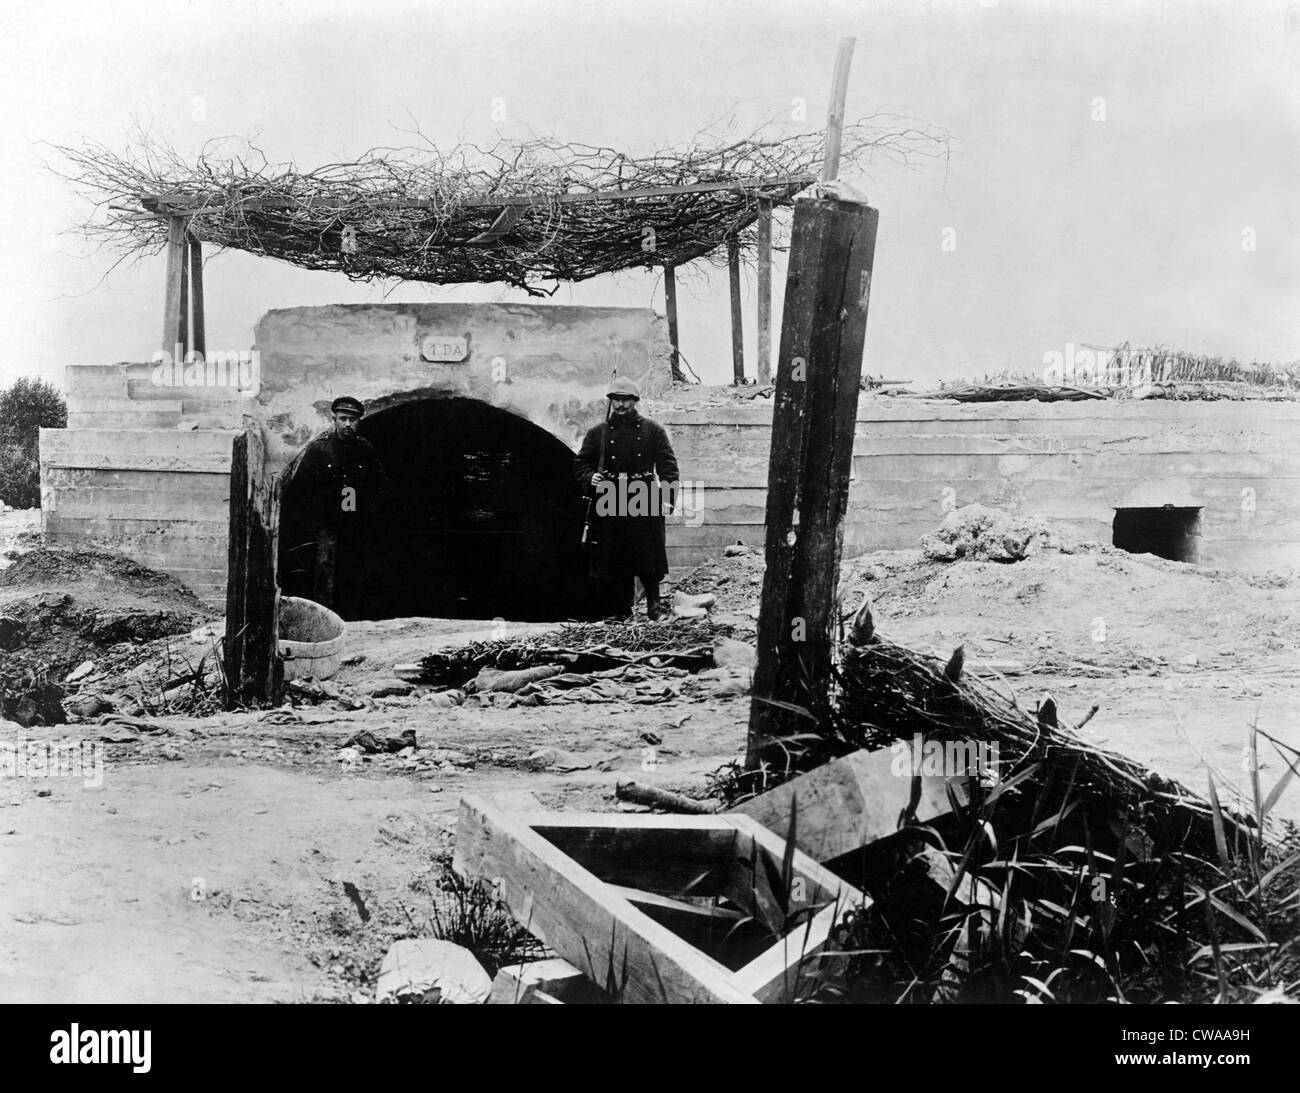 La I Guerra Mundial: una caseta de hormigón para la artillería en el frente belga, 1918. Cortesía: CSU Archives / Everett Collection Foto de stock